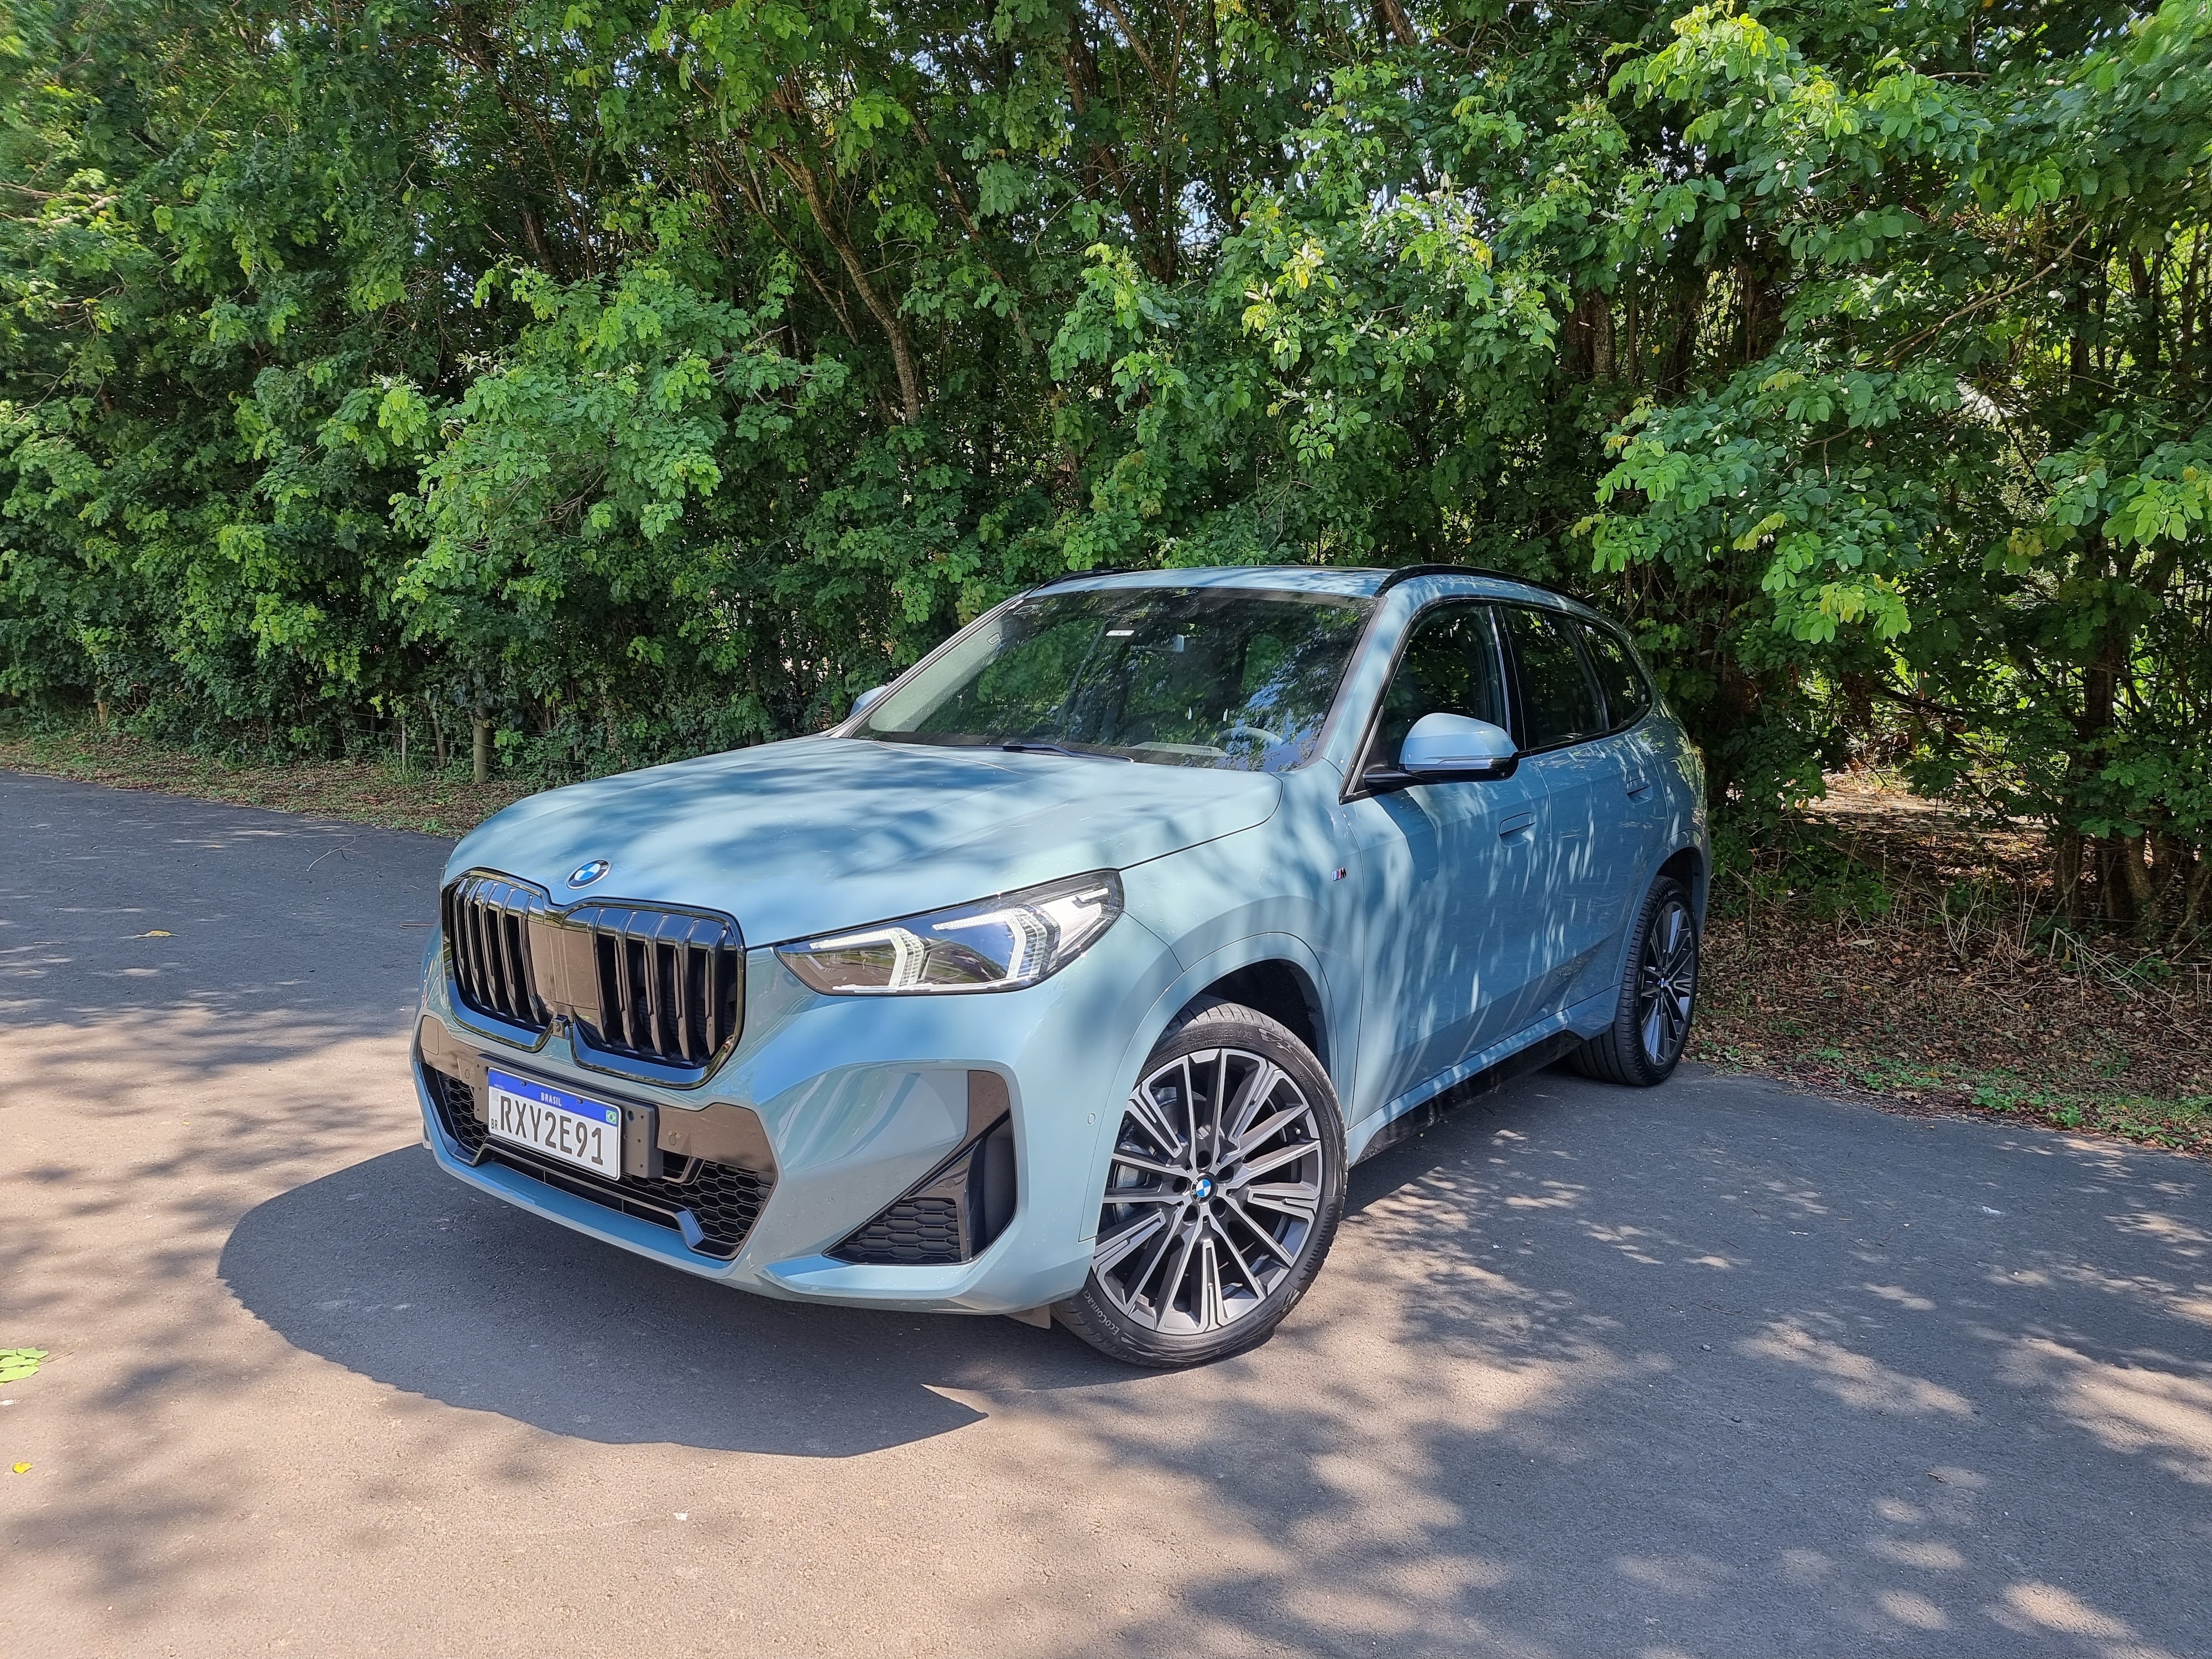 Novo BMW X1 produzido no Brasil: primeiras impressões - AUTOO